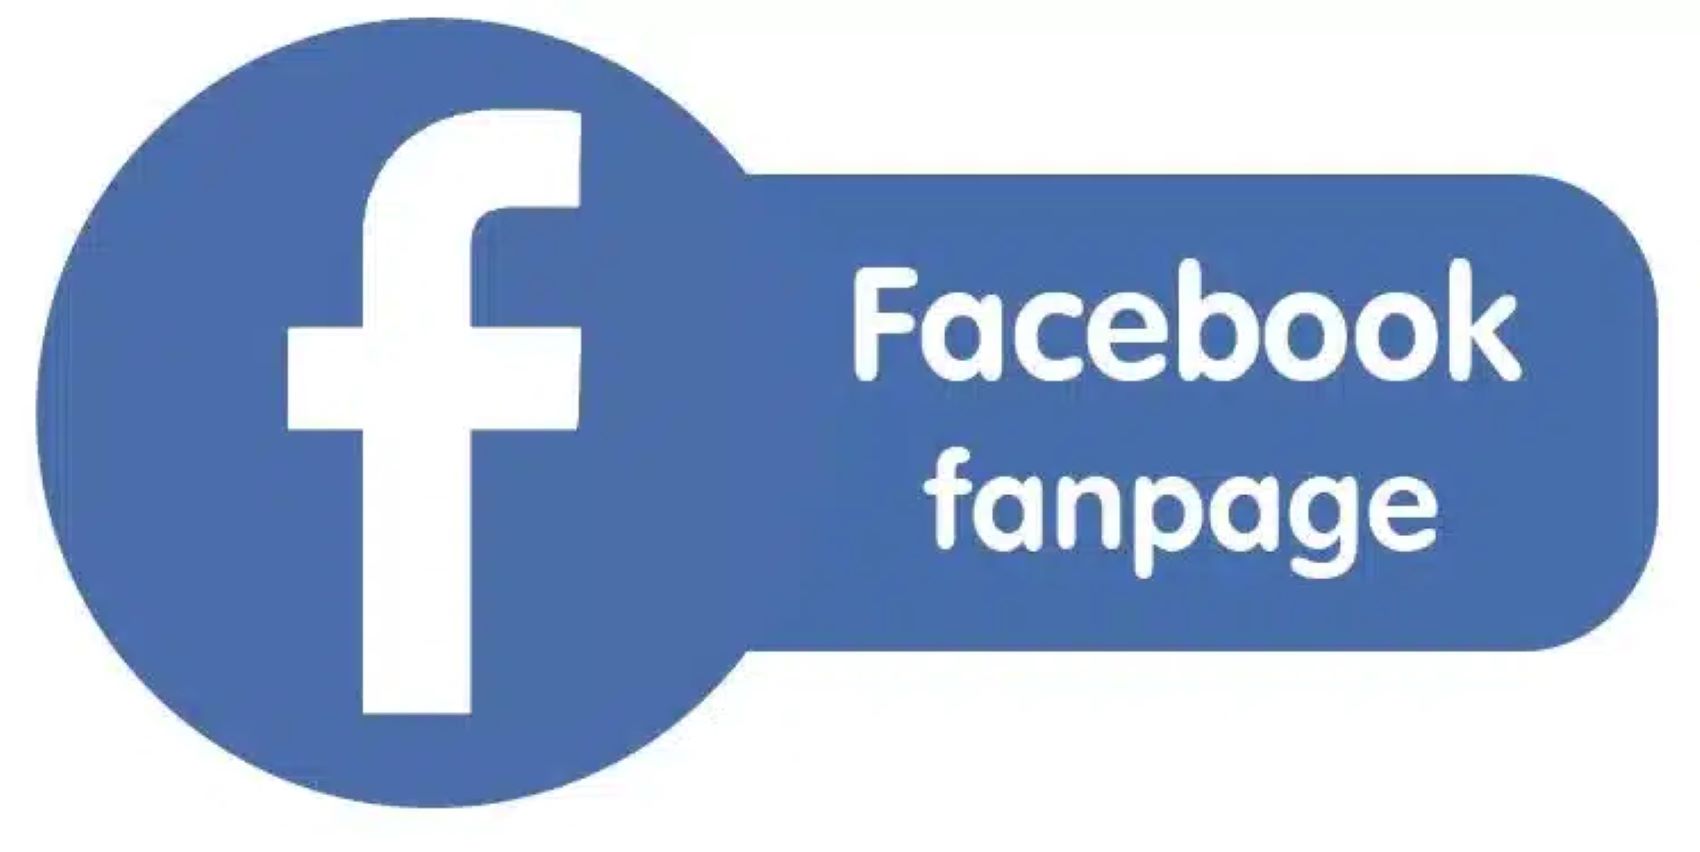 Facebook fanpage ngoài giúp quảng bá thương hiệu, fangpage còn hỗ trợ nhiều tính năng khác